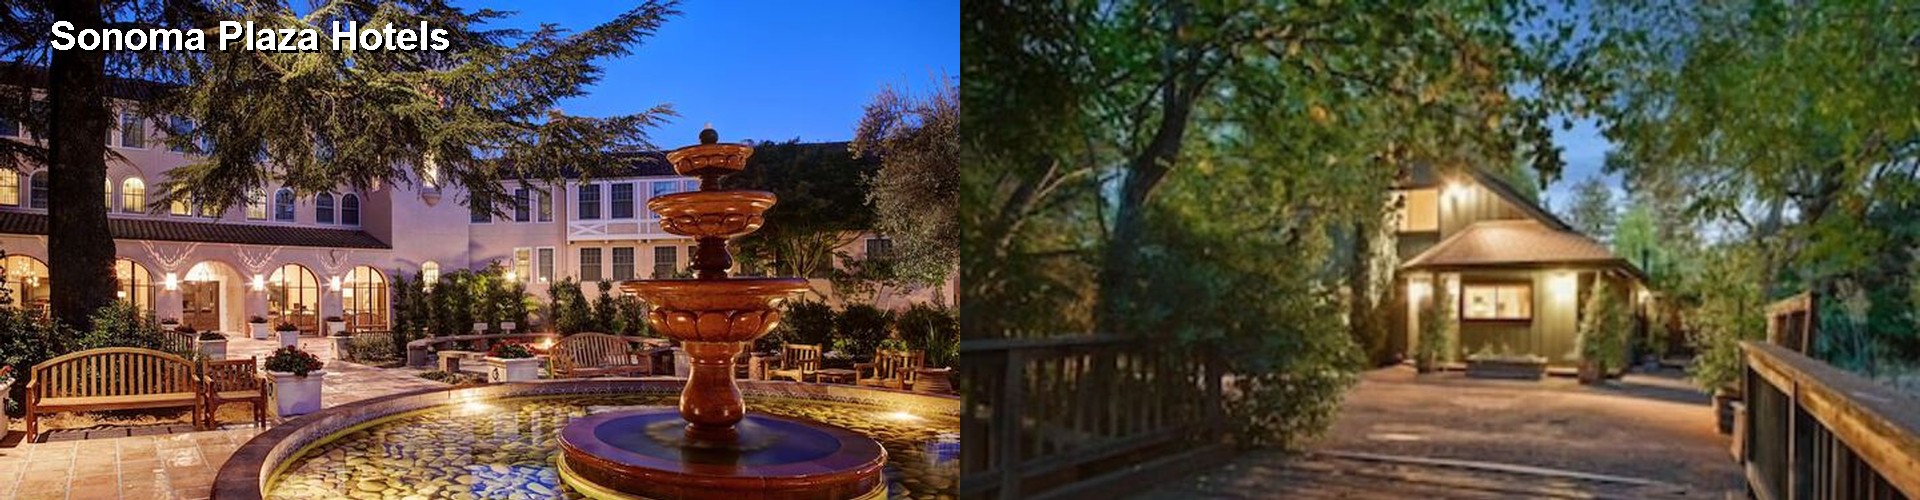 5 Best Hotels near Sonoma Plaza